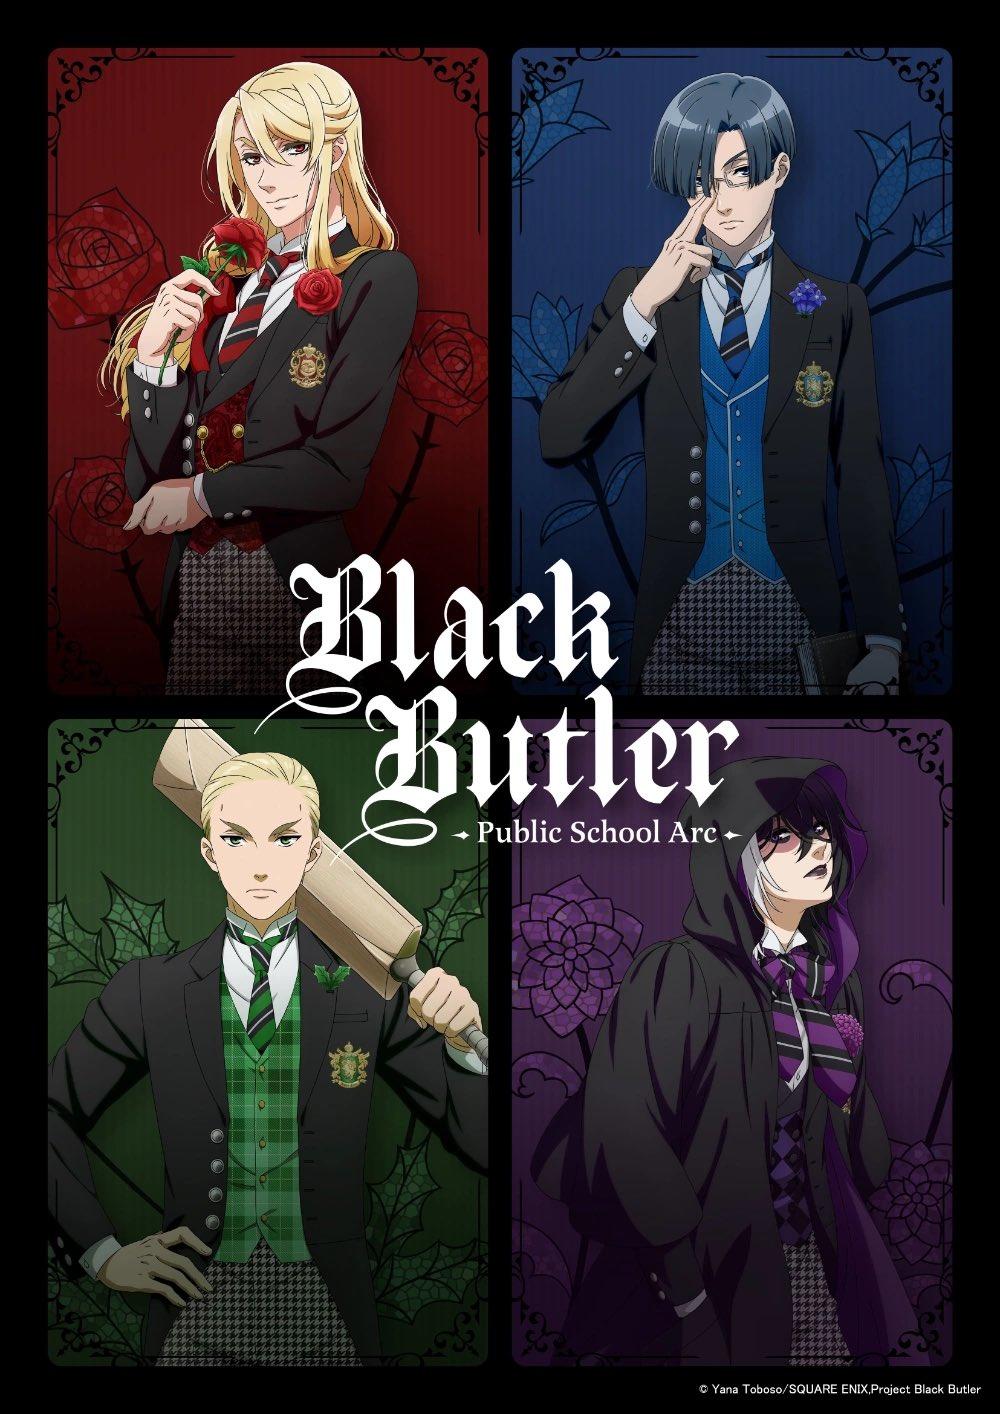 Black Butler Anime Revival Announced